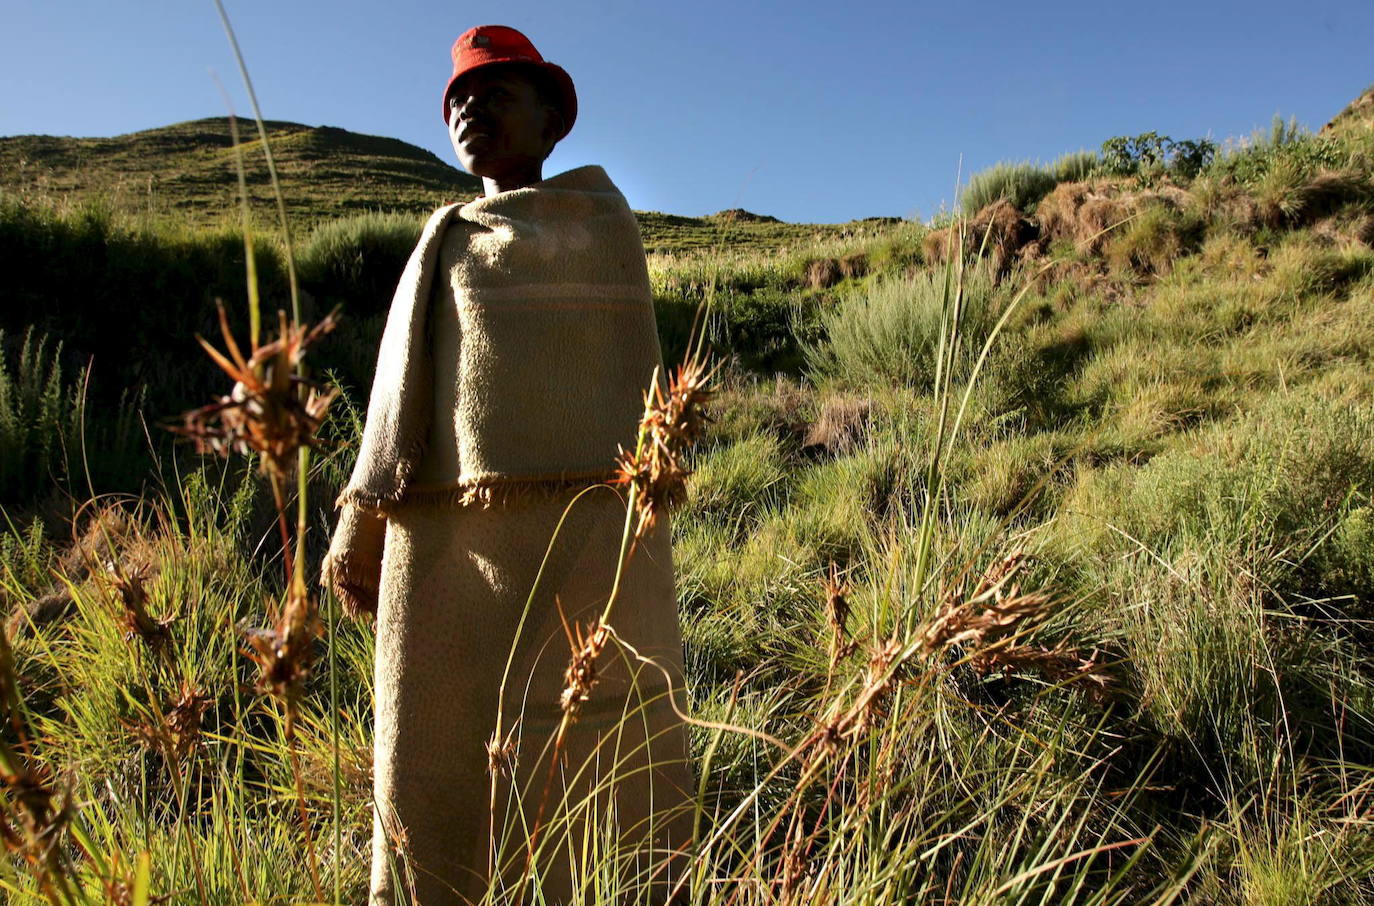 Lesoto: a causa de la inestabilidad política que vive el país, se recomienda extremar la precación en las visitas a Lesoto, tomar medidas de seguridad personal, evitar concentraciones y restringir los movimientos durante la noche.